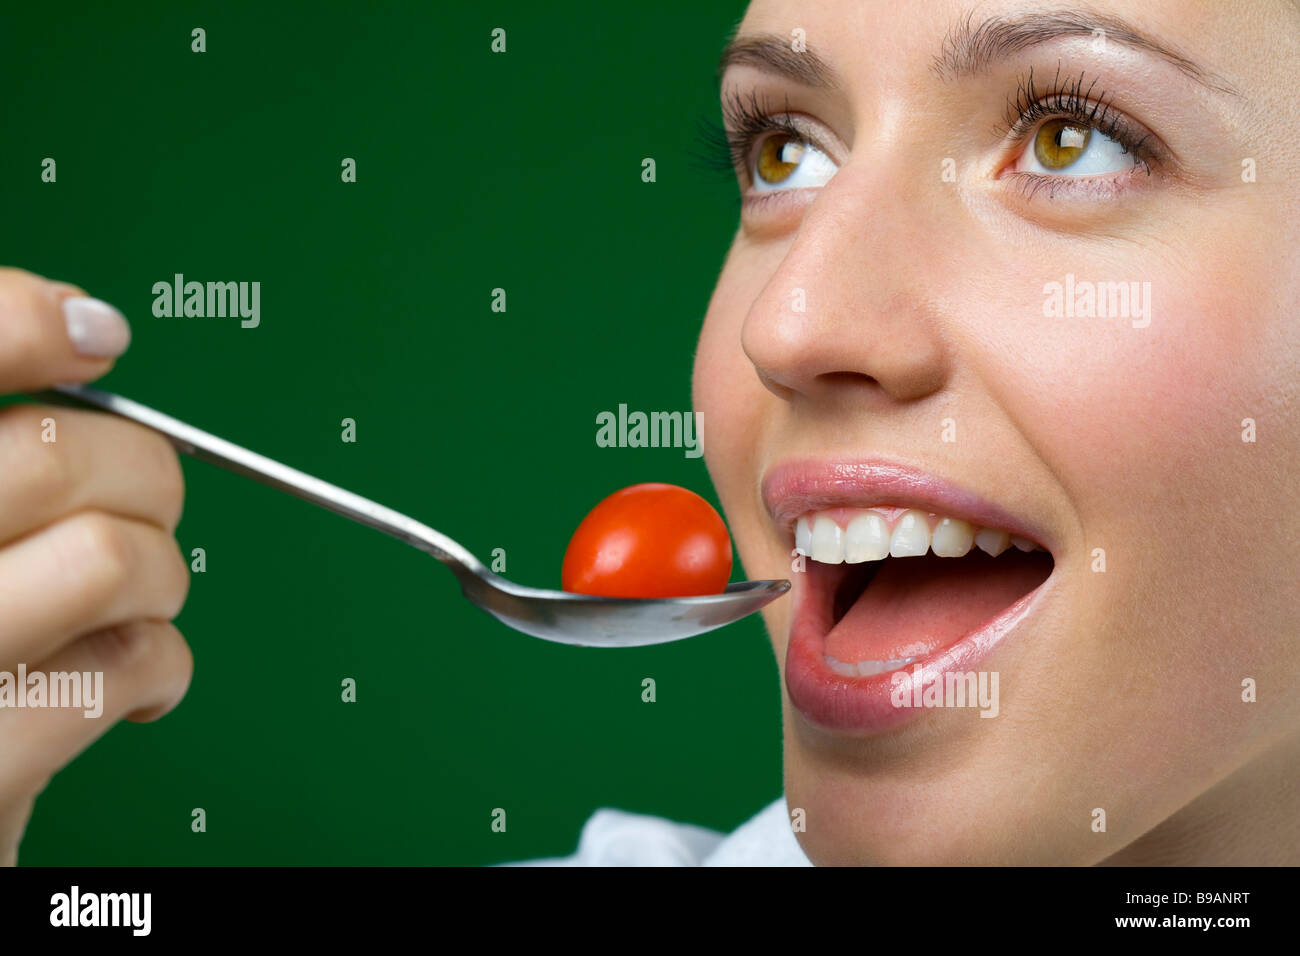 Frau, die Tomaten zu essen Stockfoto